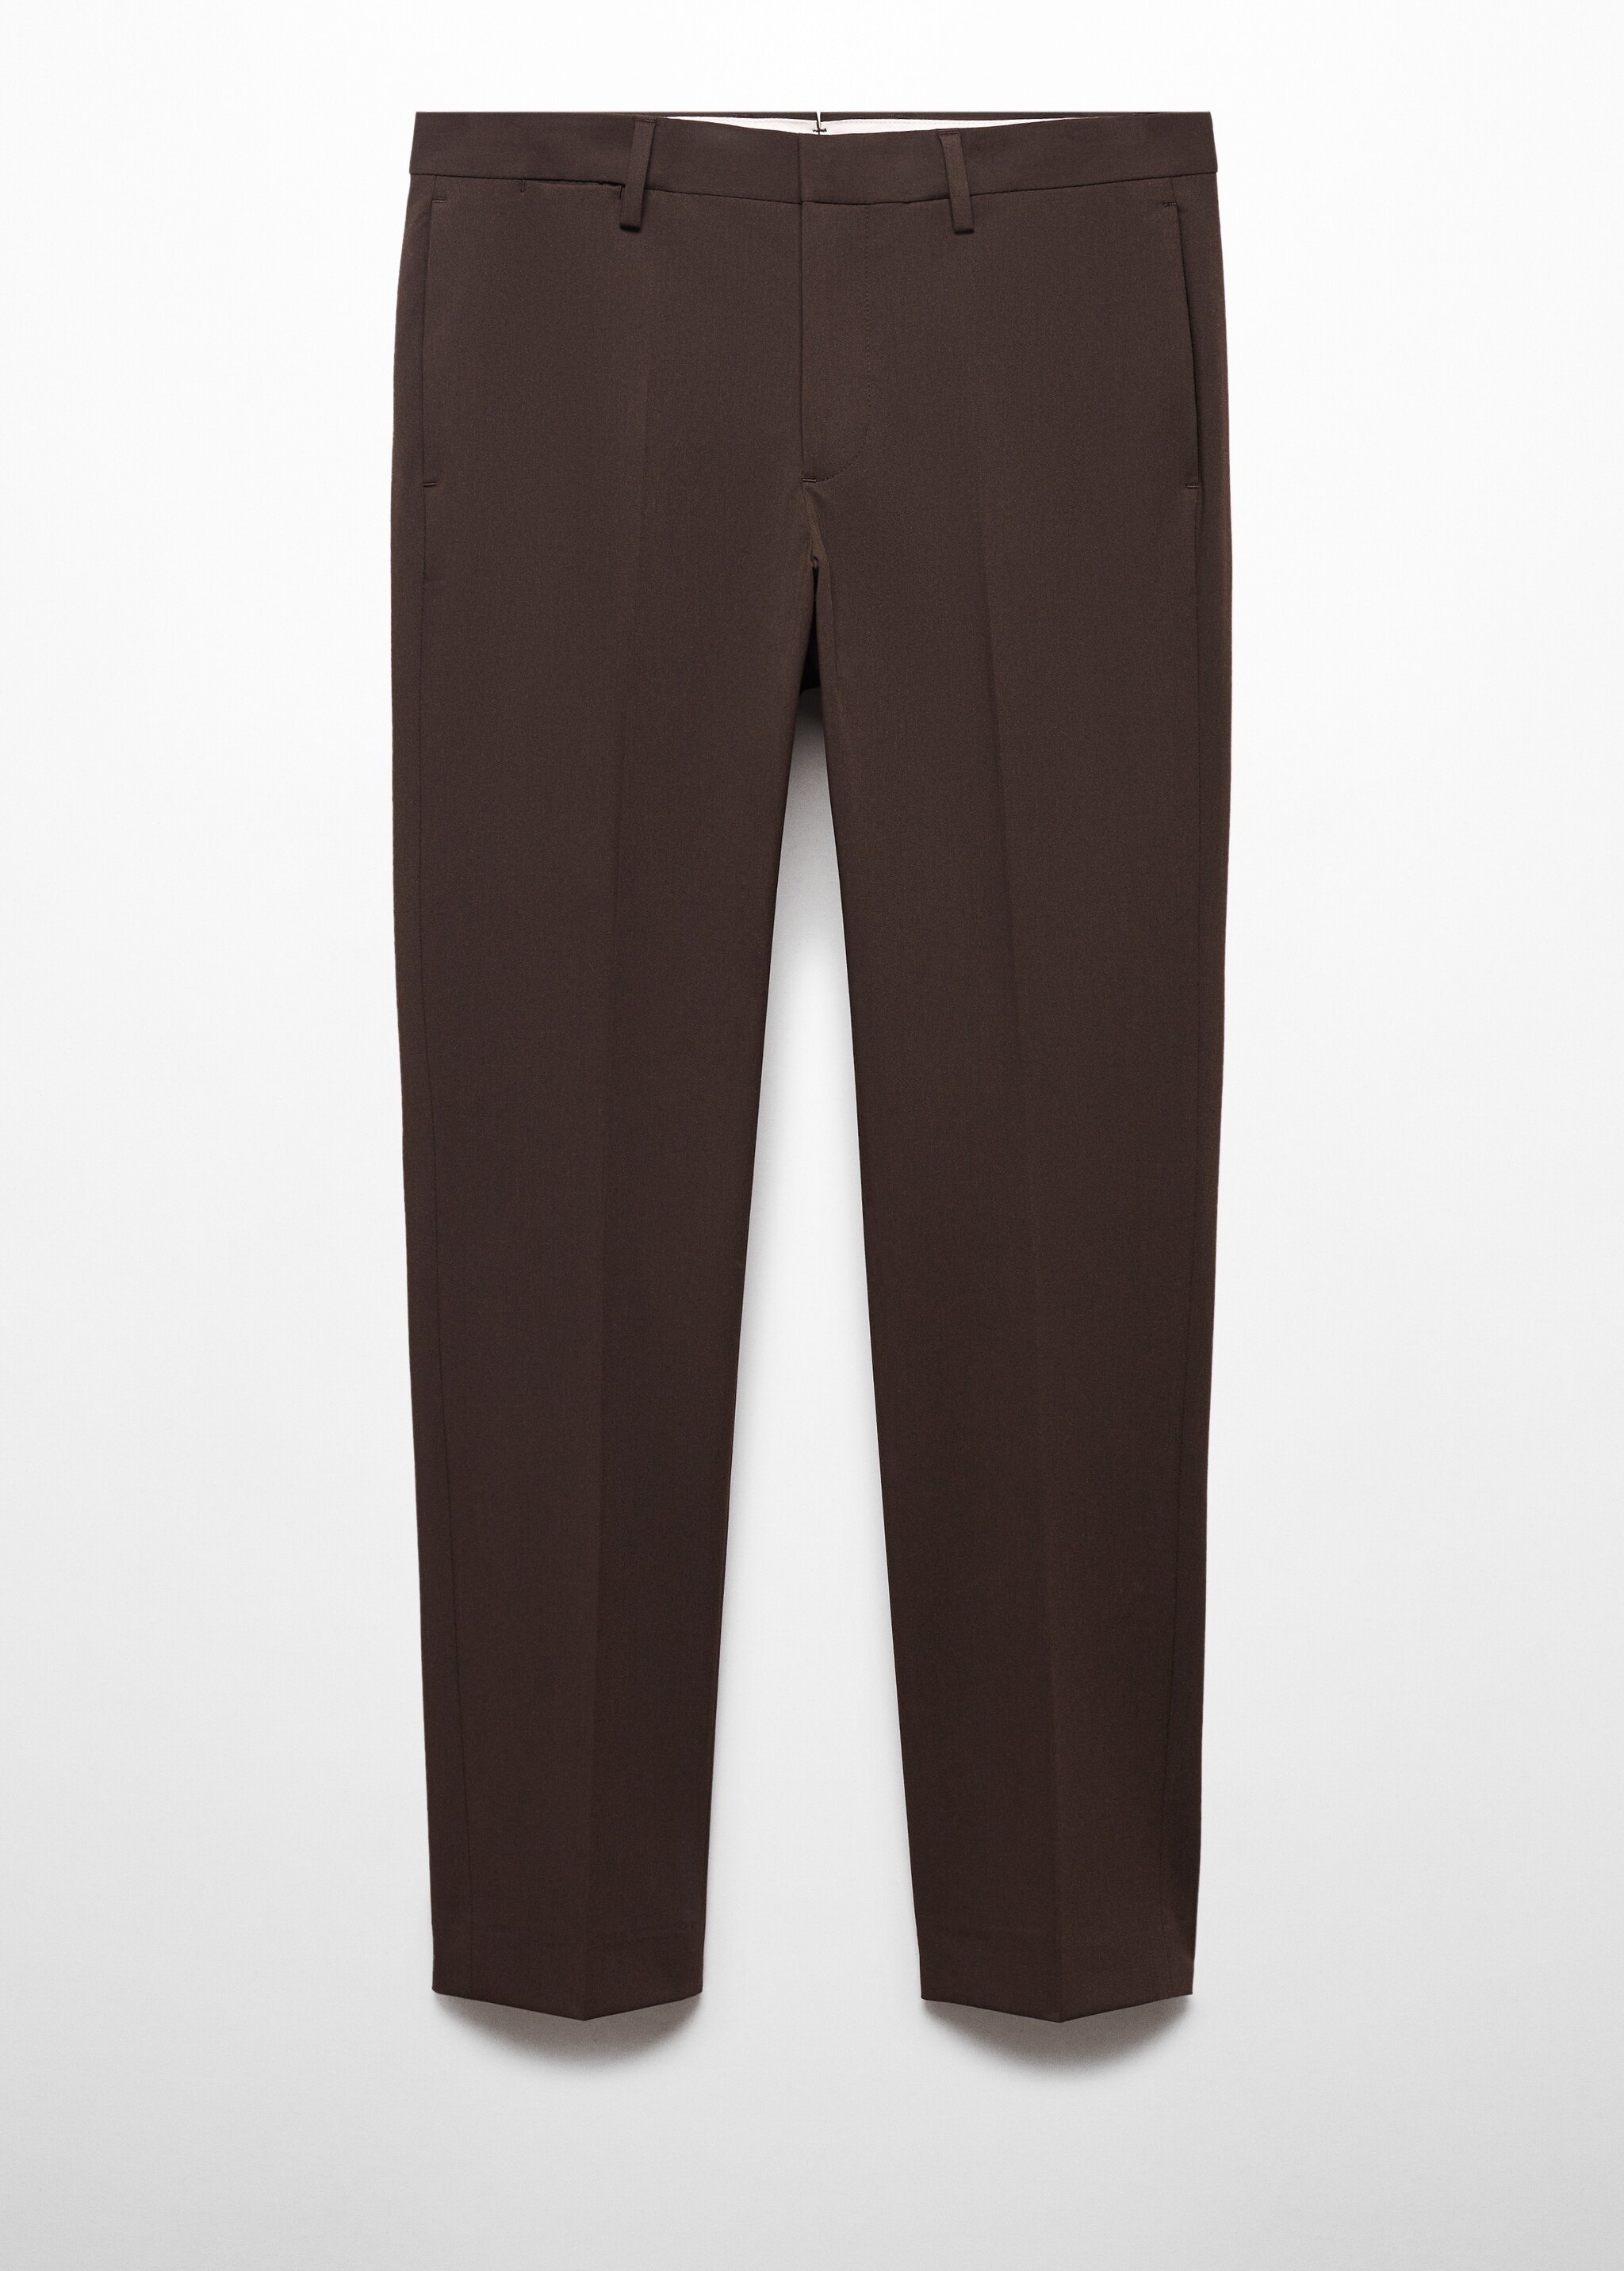 Pantalon costume super slim-fit tissu stretch - Article sans modèle